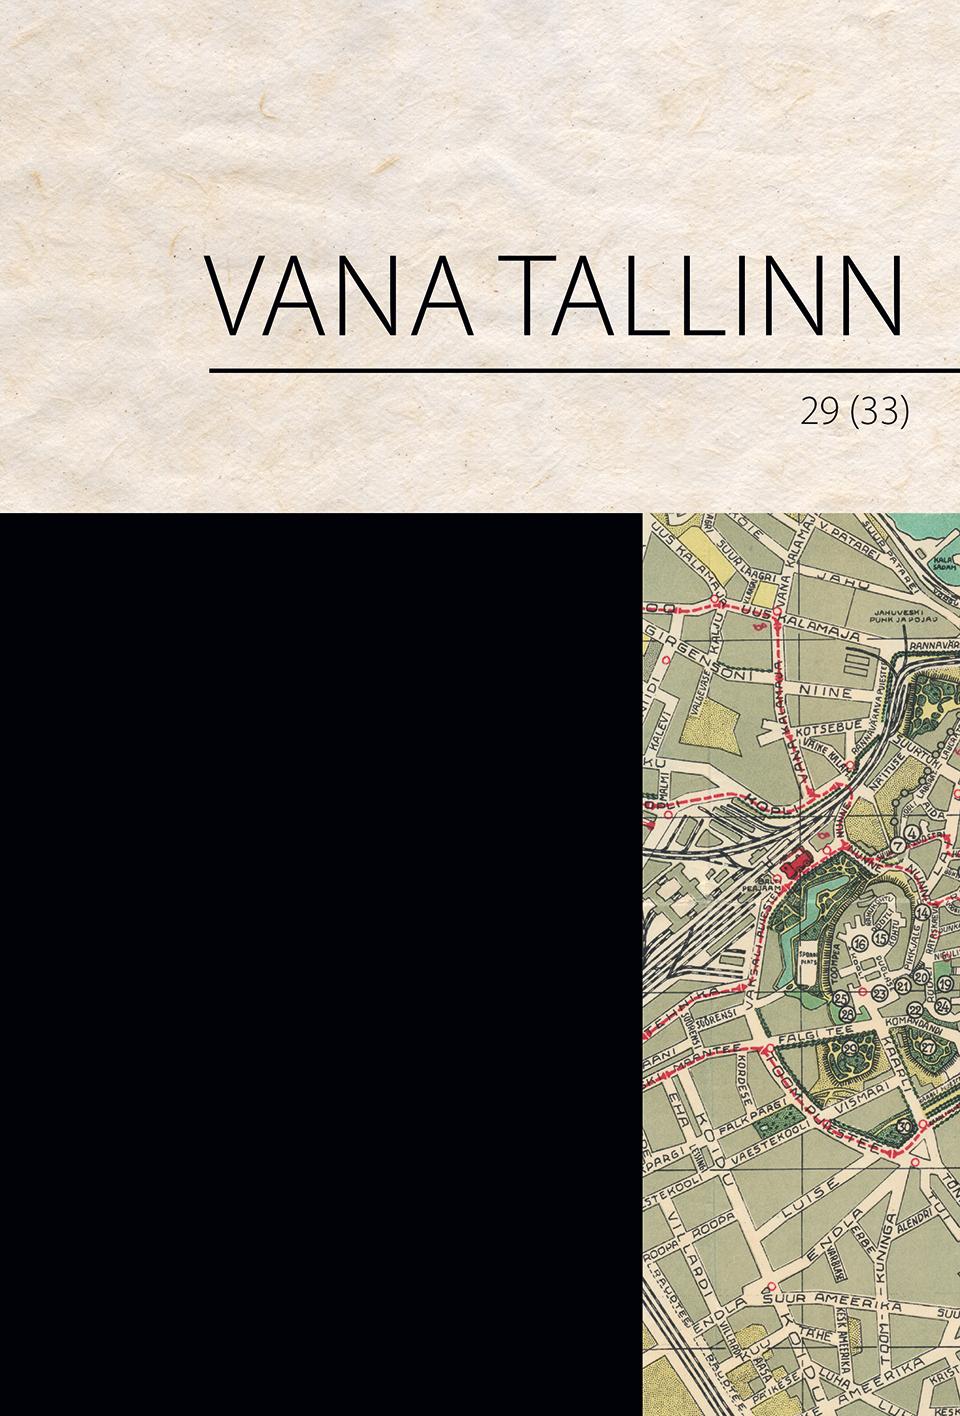 VANA TALLINN 29 (33)